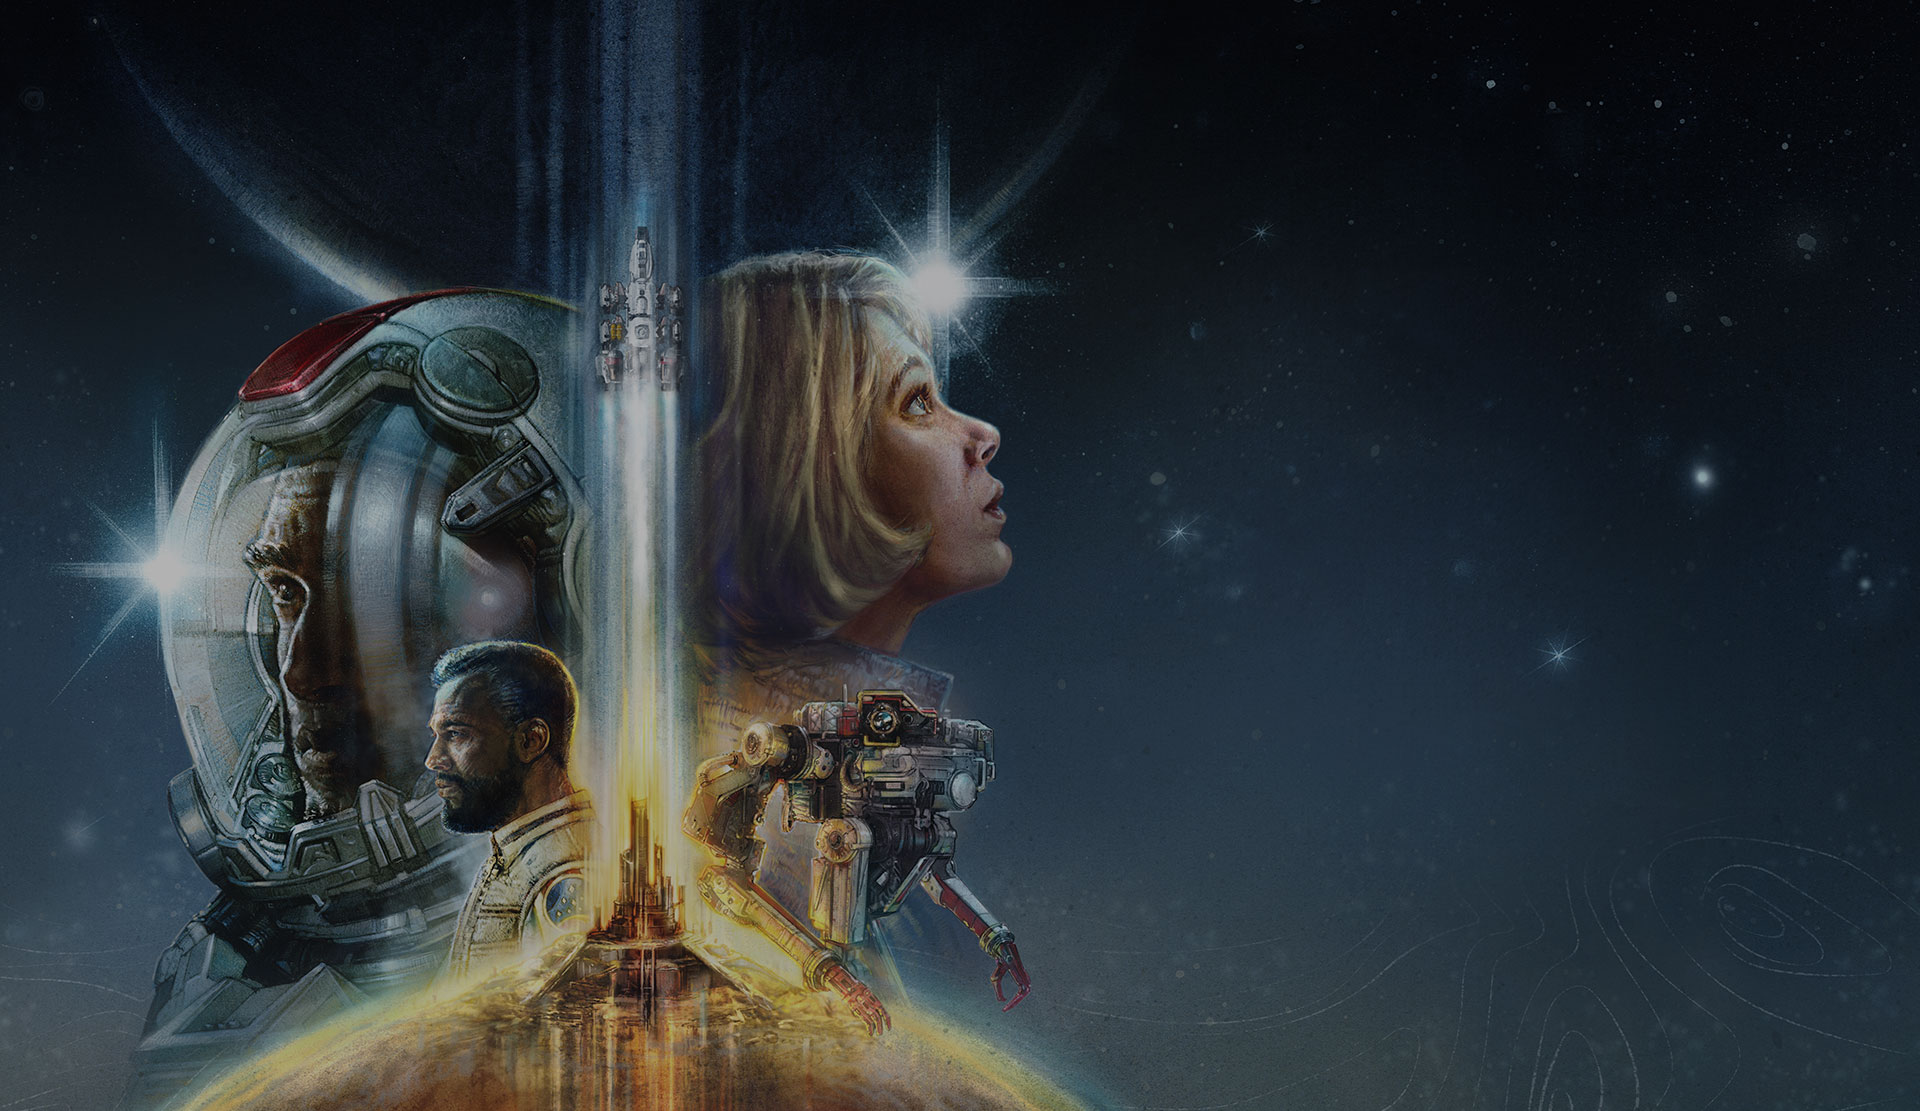 Starfield. Cuatro personajes superpuestos mirando a la izquierda y a la derecha con un cohete que despega en el centro y un fondo espacial.